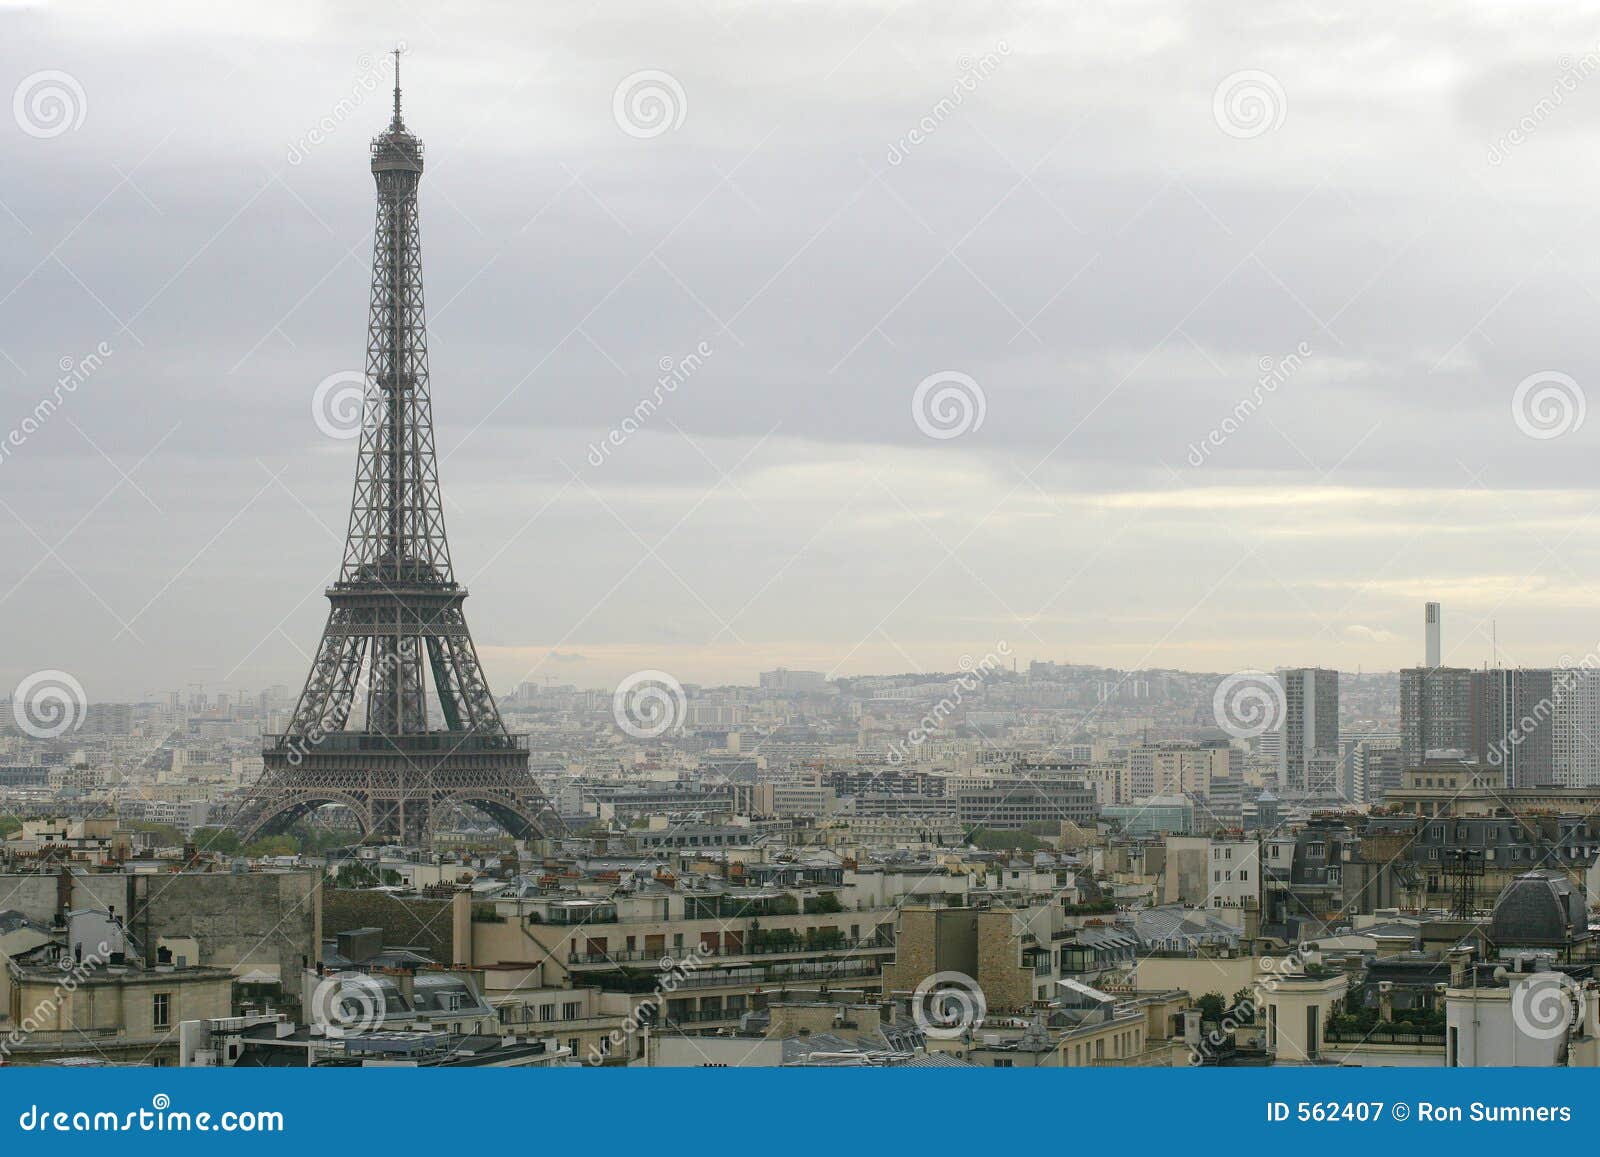 Photographie stock libre de droits: Paysage urbain de Paris